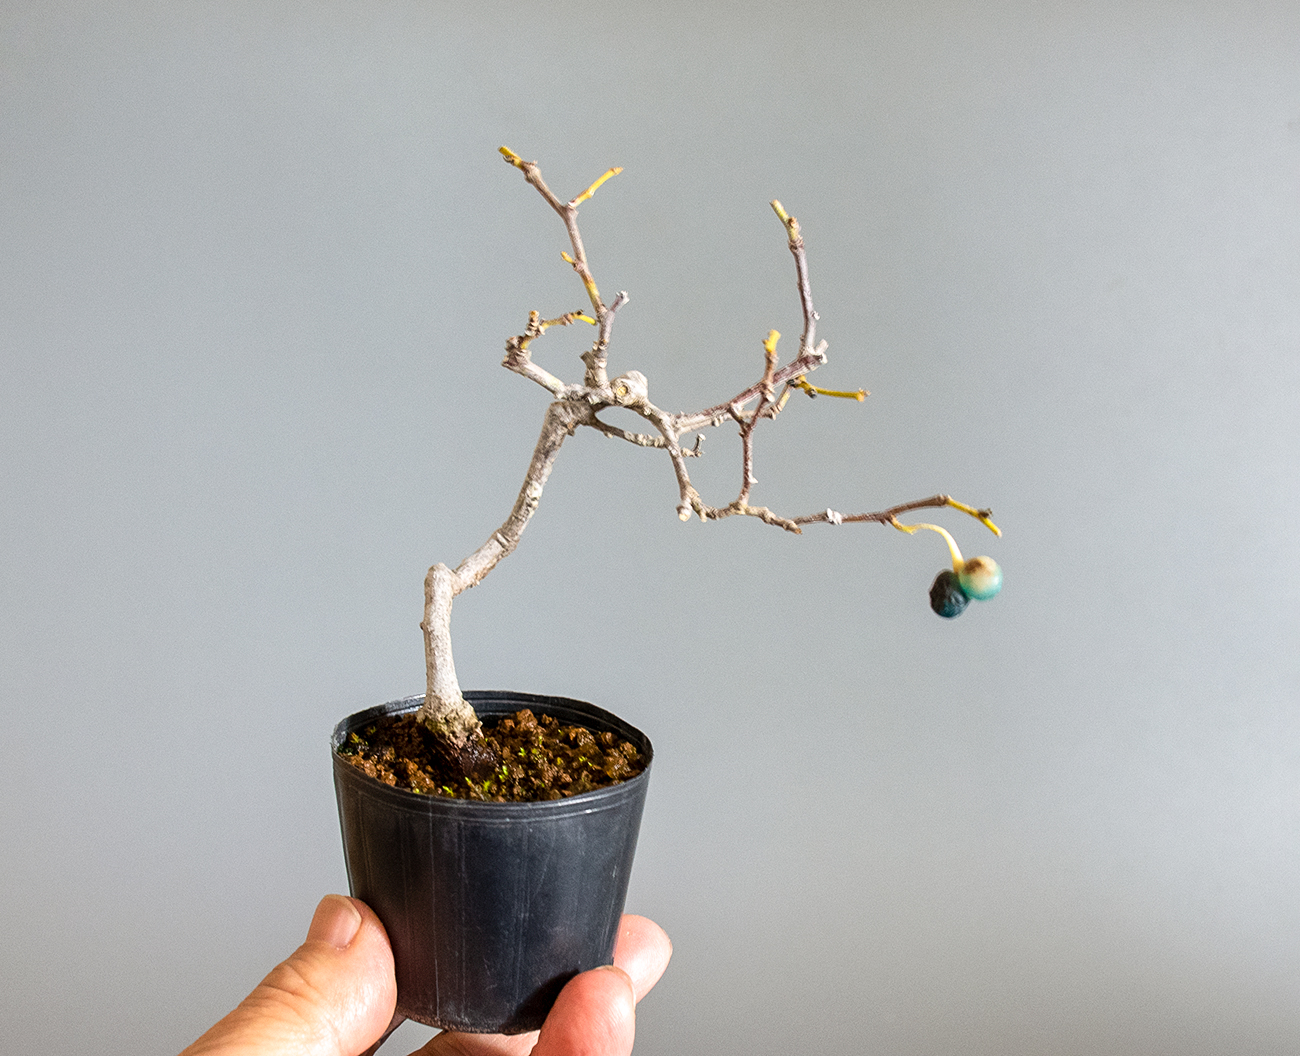 アオカズラ-G2（あおかずら・青葛）ルリビョウタン（るりびょうたん・瑠璃瓢箪）実もの盆栽を裏側から見た景色・Sabia japonica bonsai